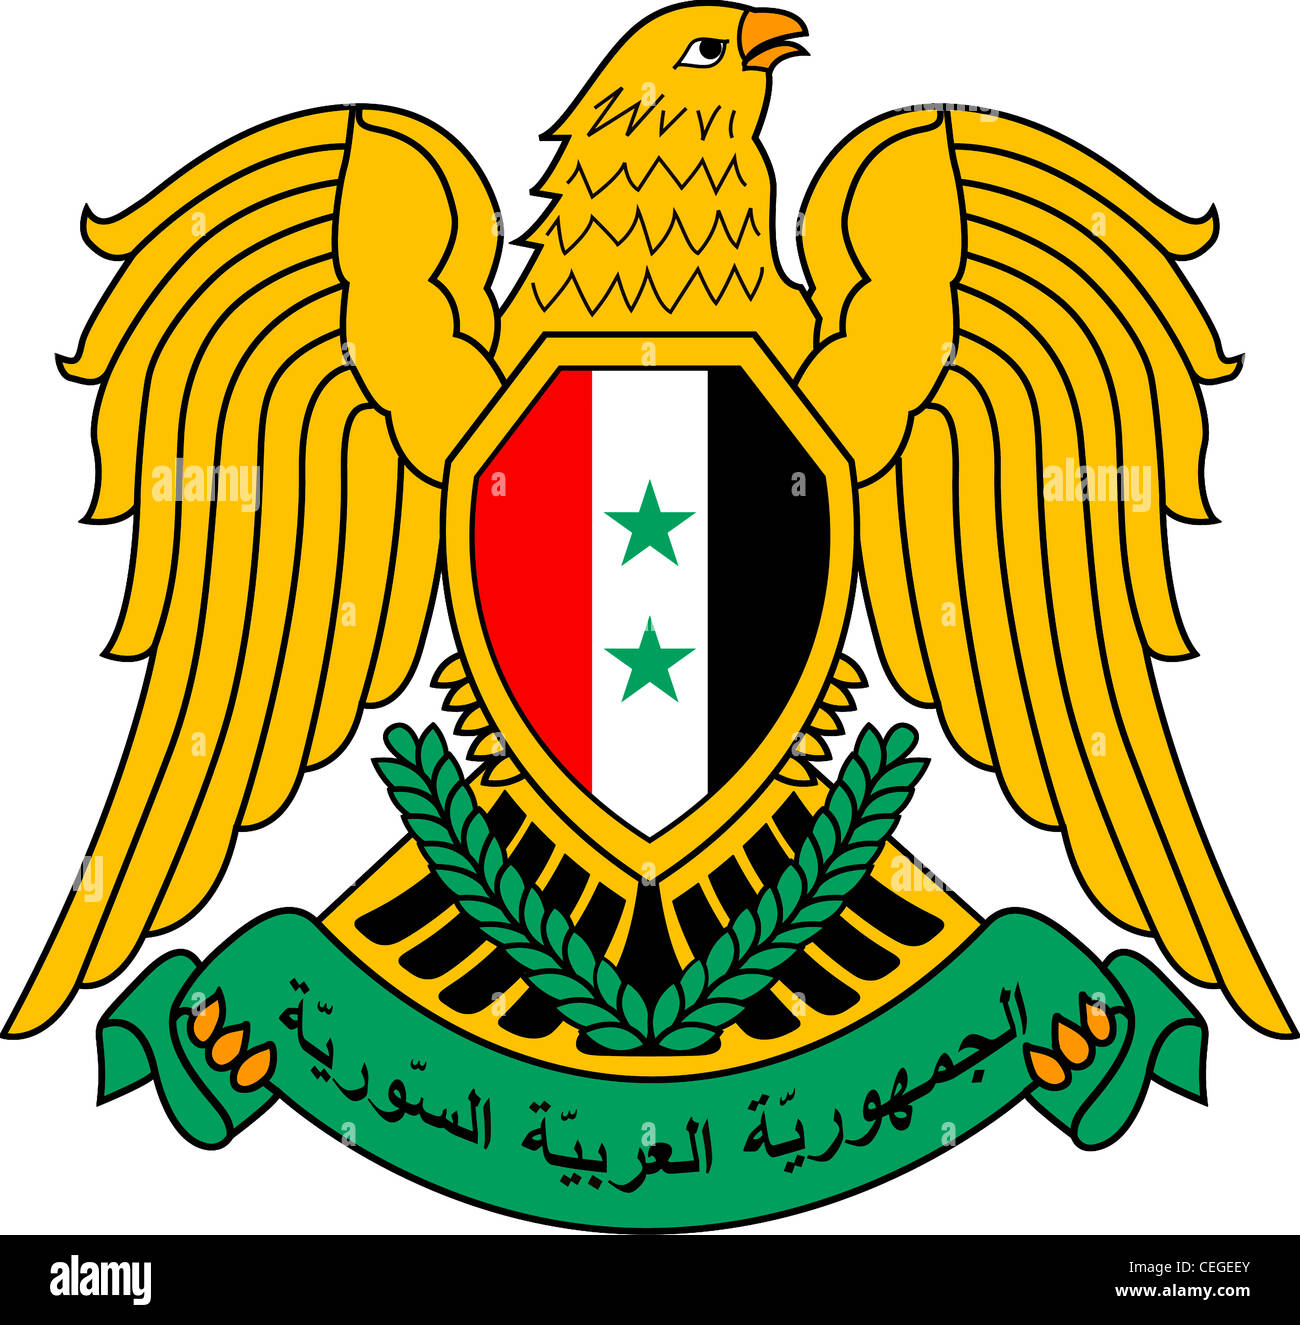 Wappen der Arabischen Republik Syrien. Stockfoto